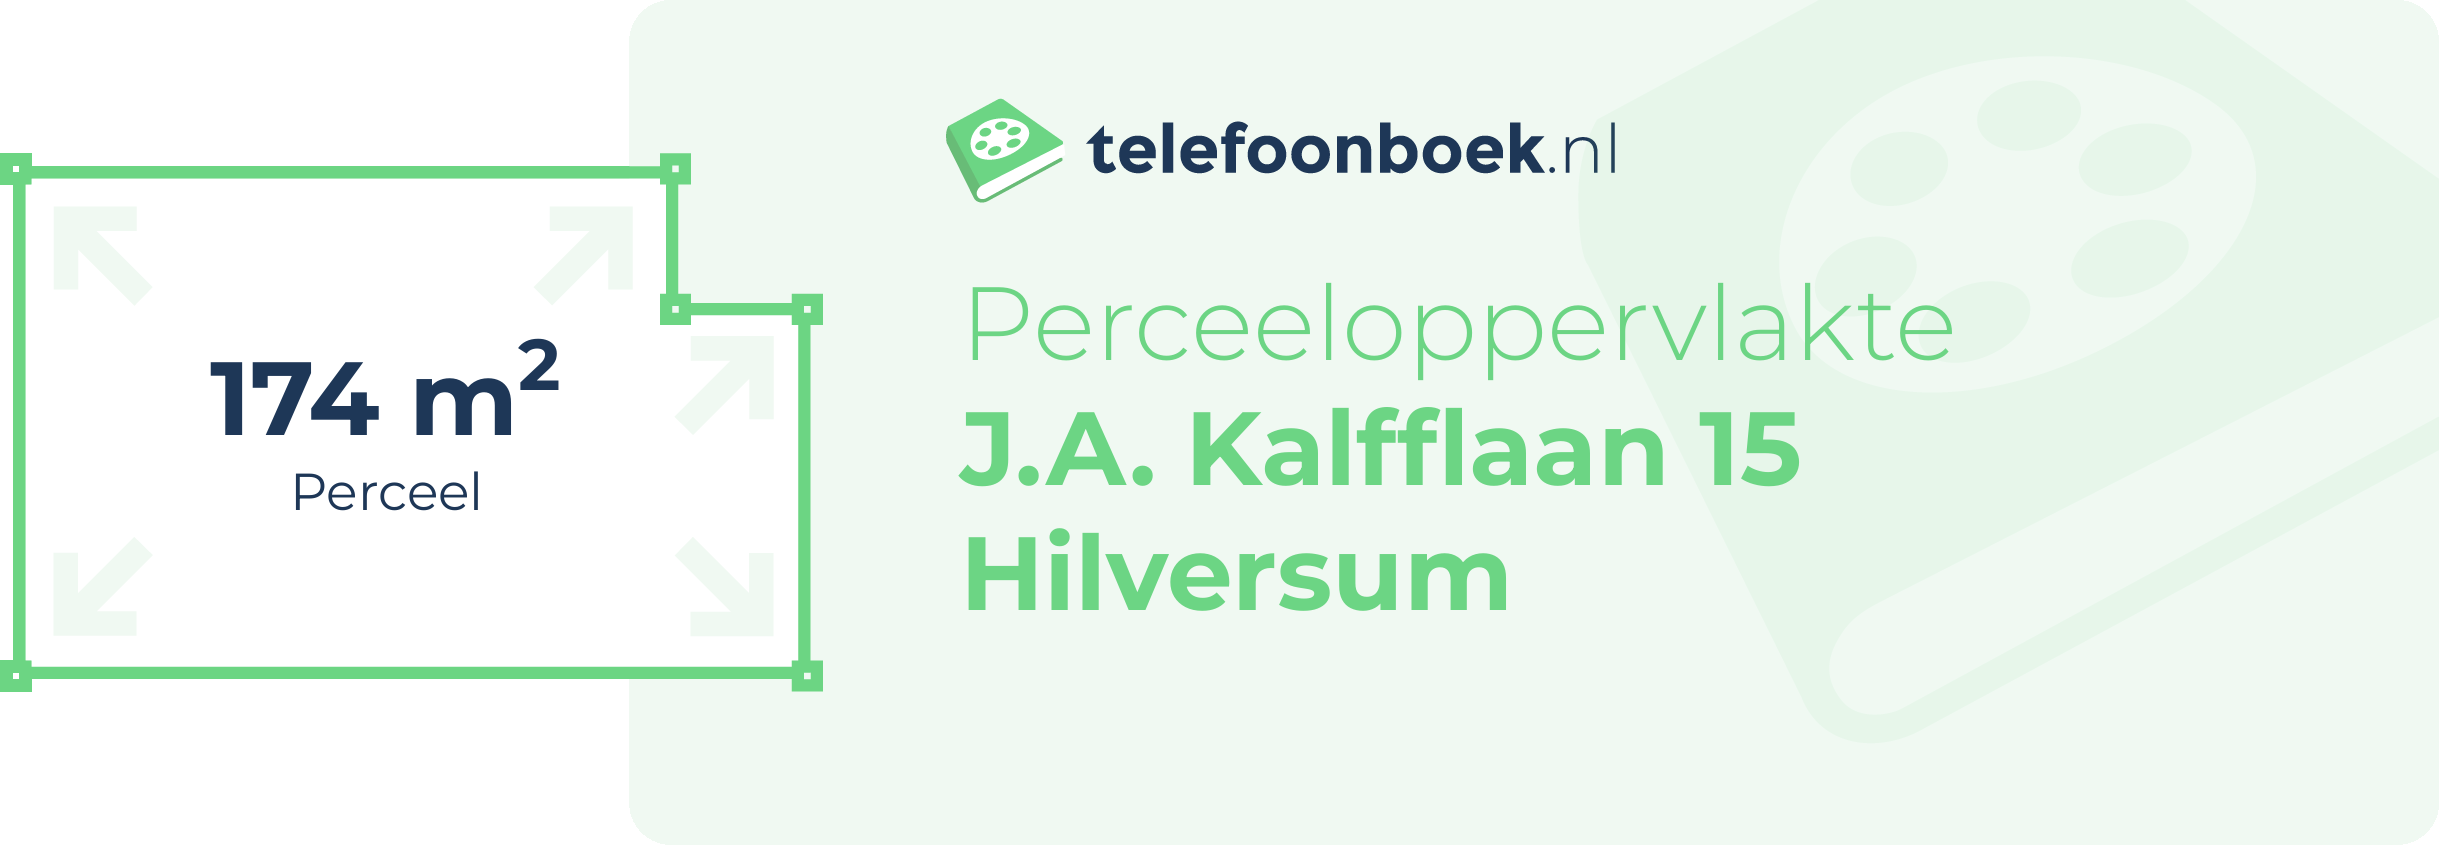 Perceeloppervlakte J.A. Kalfflaan 15 Hilversum